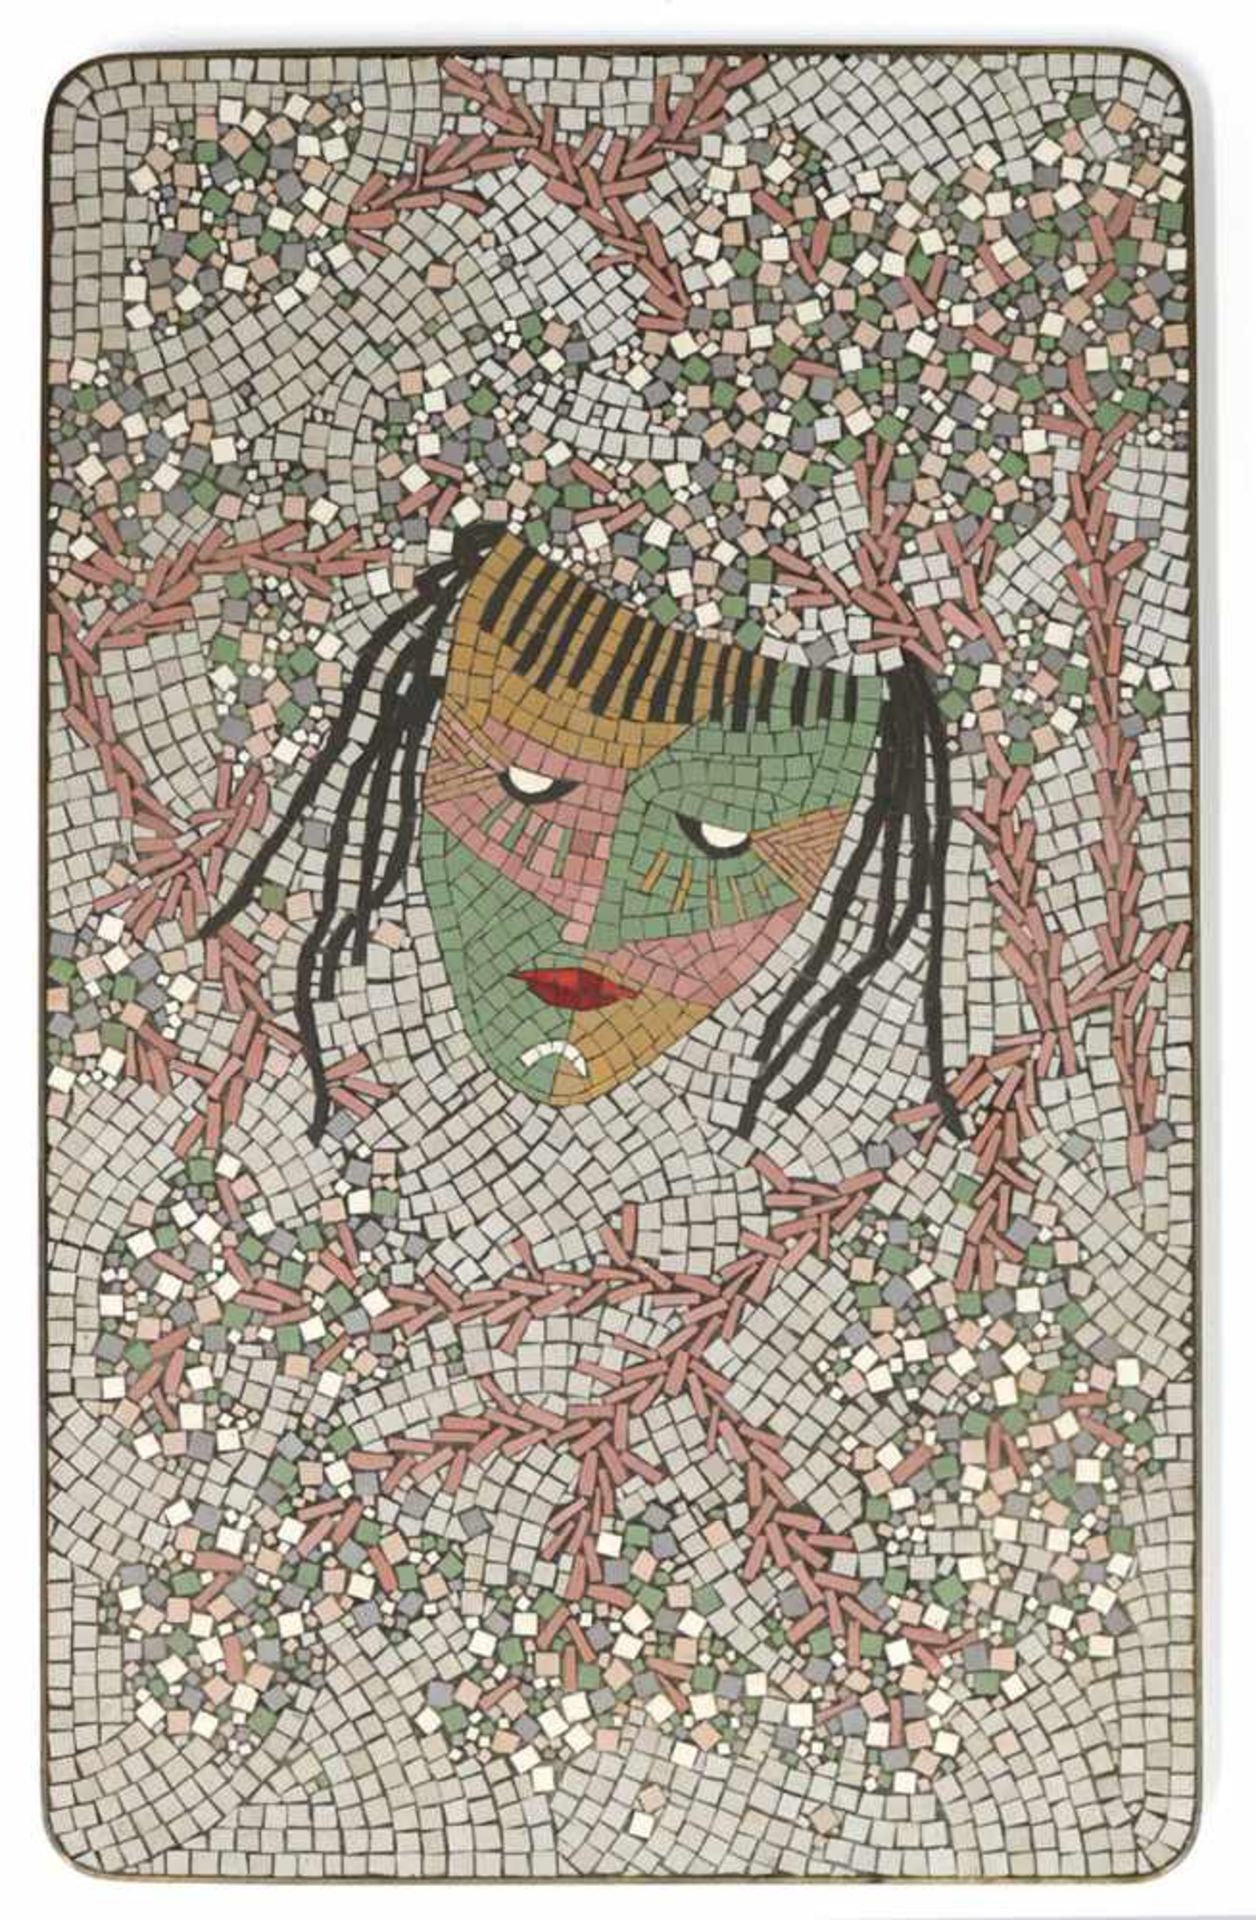 Tischmosaik 50er JahreTischmosaik 50er Jahre Große ehem. Tischplatte, mit Mosaik aus KTisc